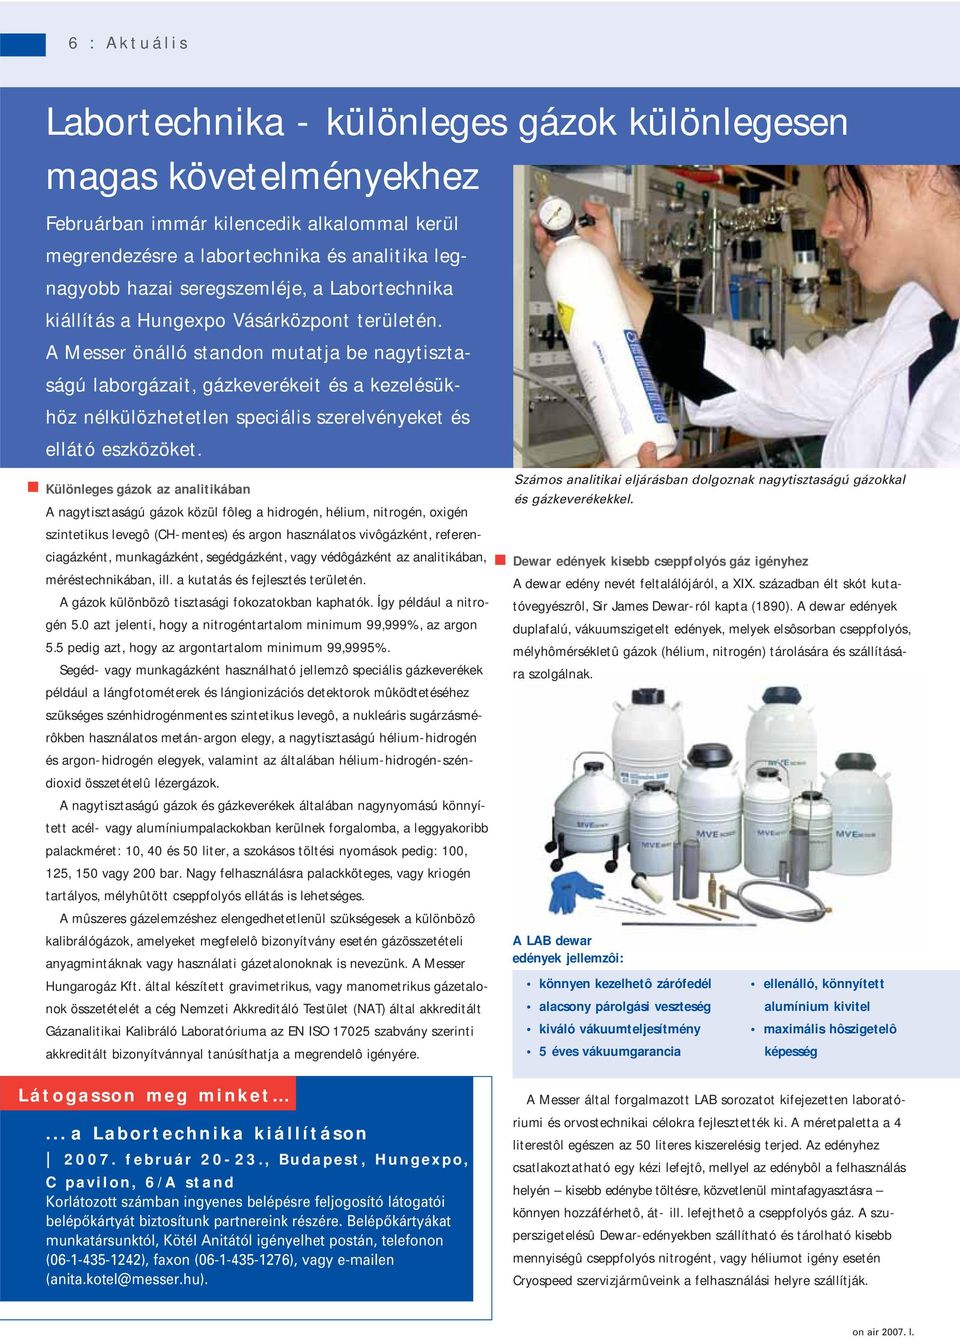 A Messer önálló standon mutatja be nagytisztaságú laborgázait, gázkeverékeit és a kezelésükhöz nélkülözhetetlen speciális szerelvényeket és ellátó eszközöket.